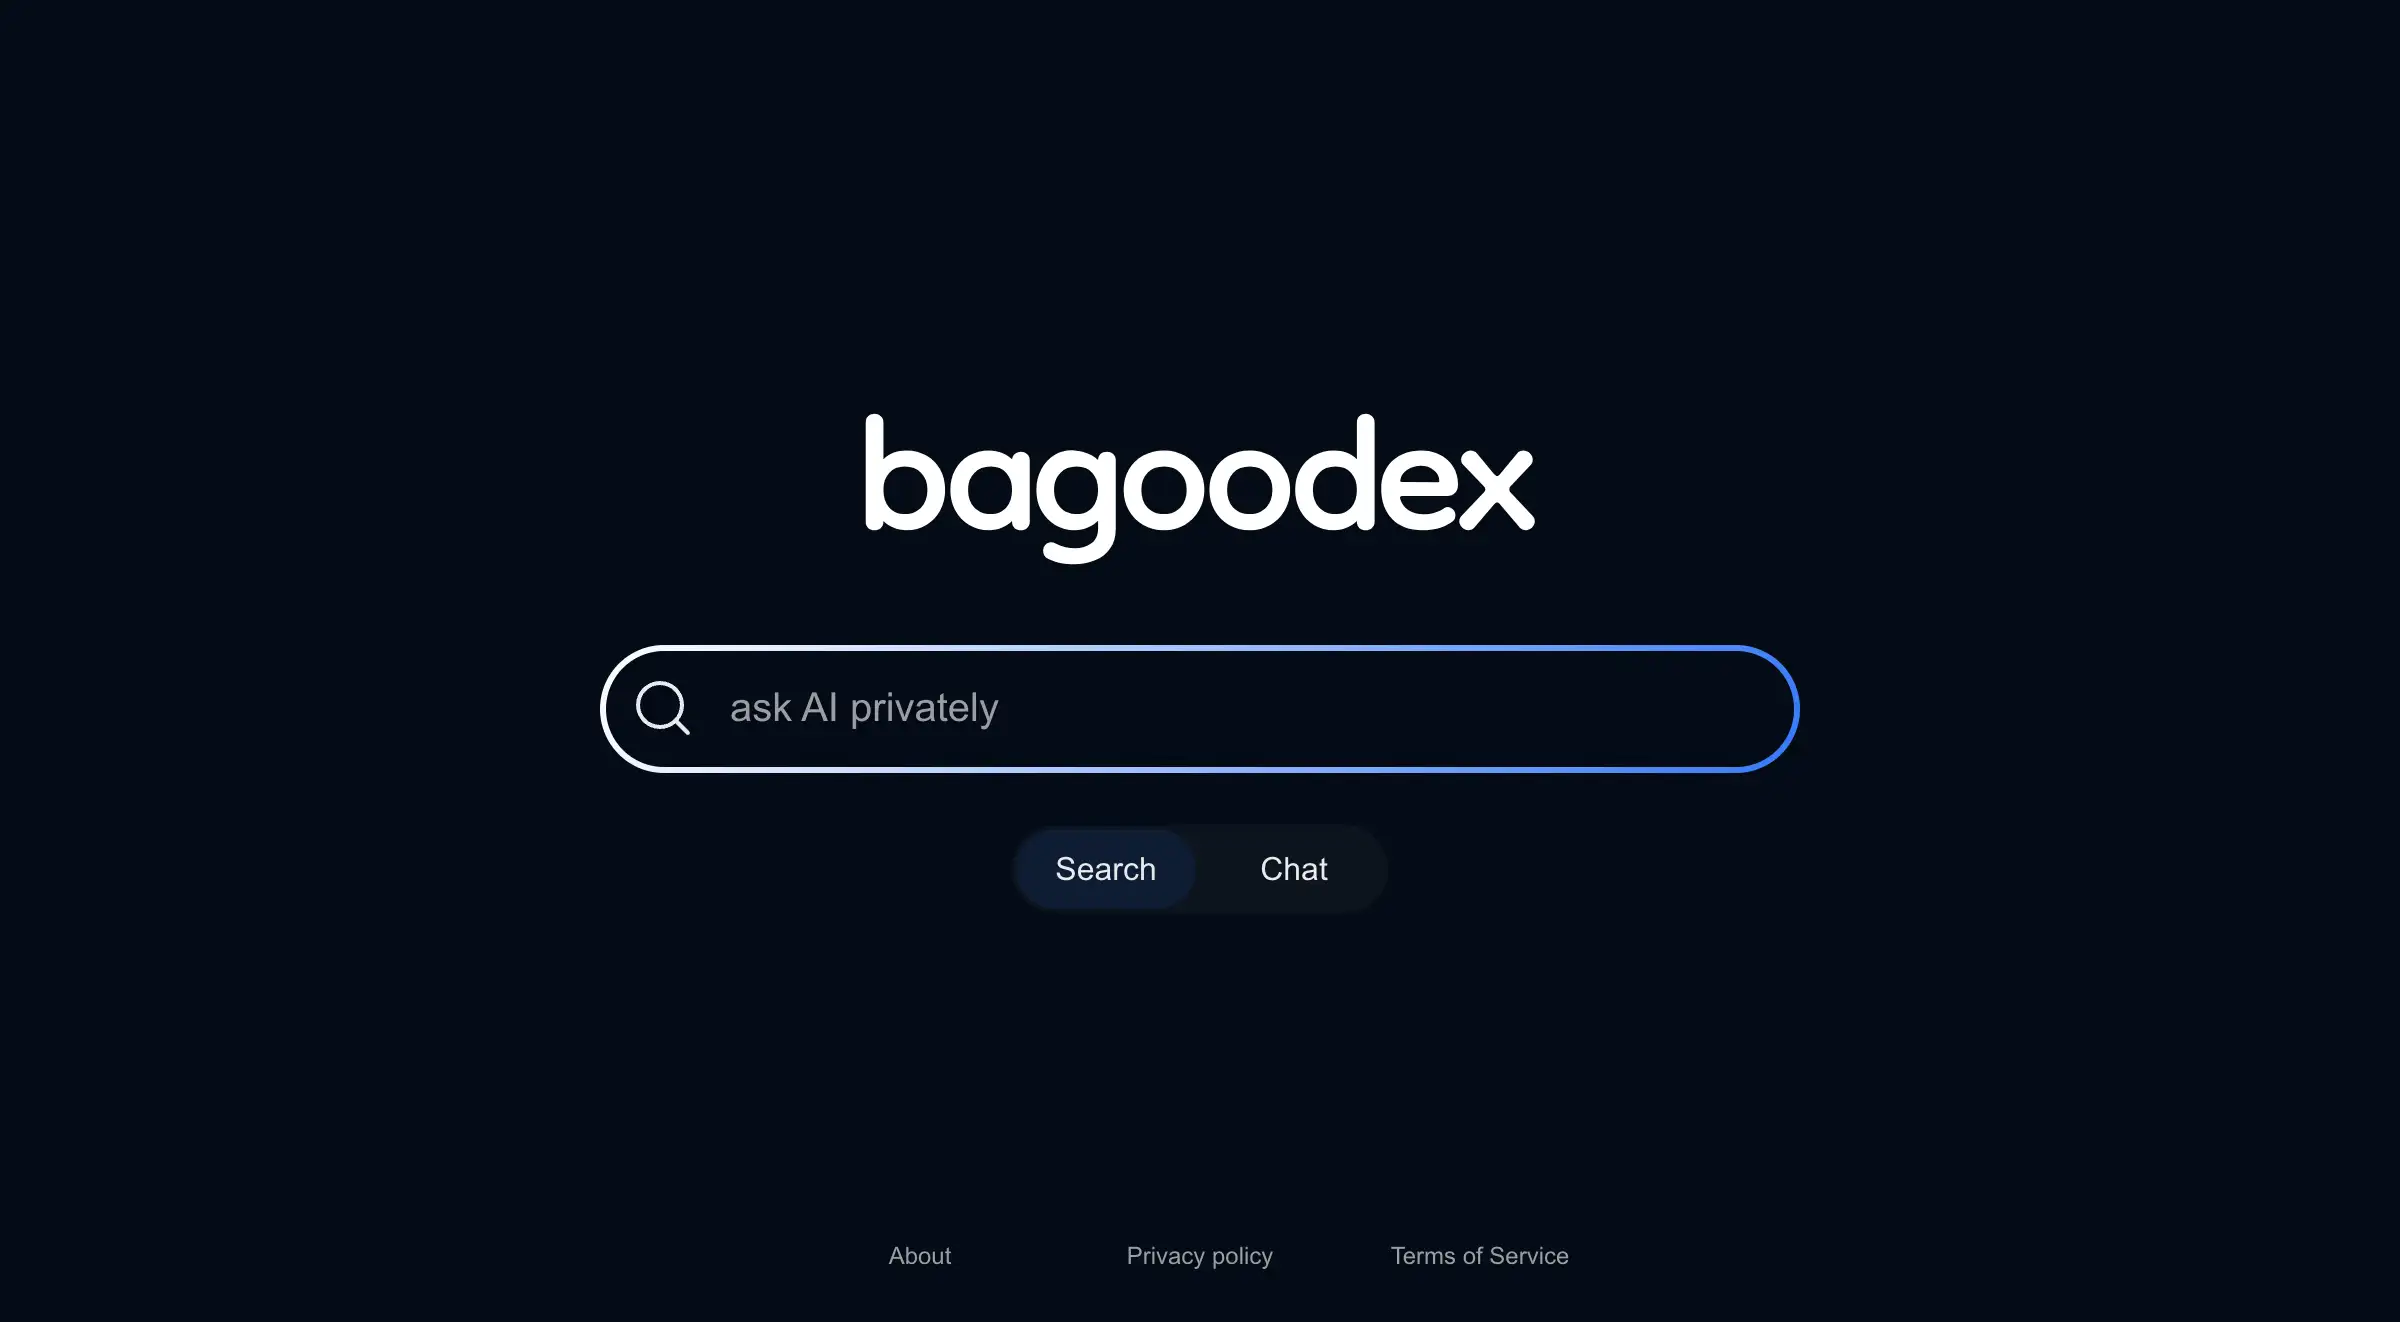 Bagoodex